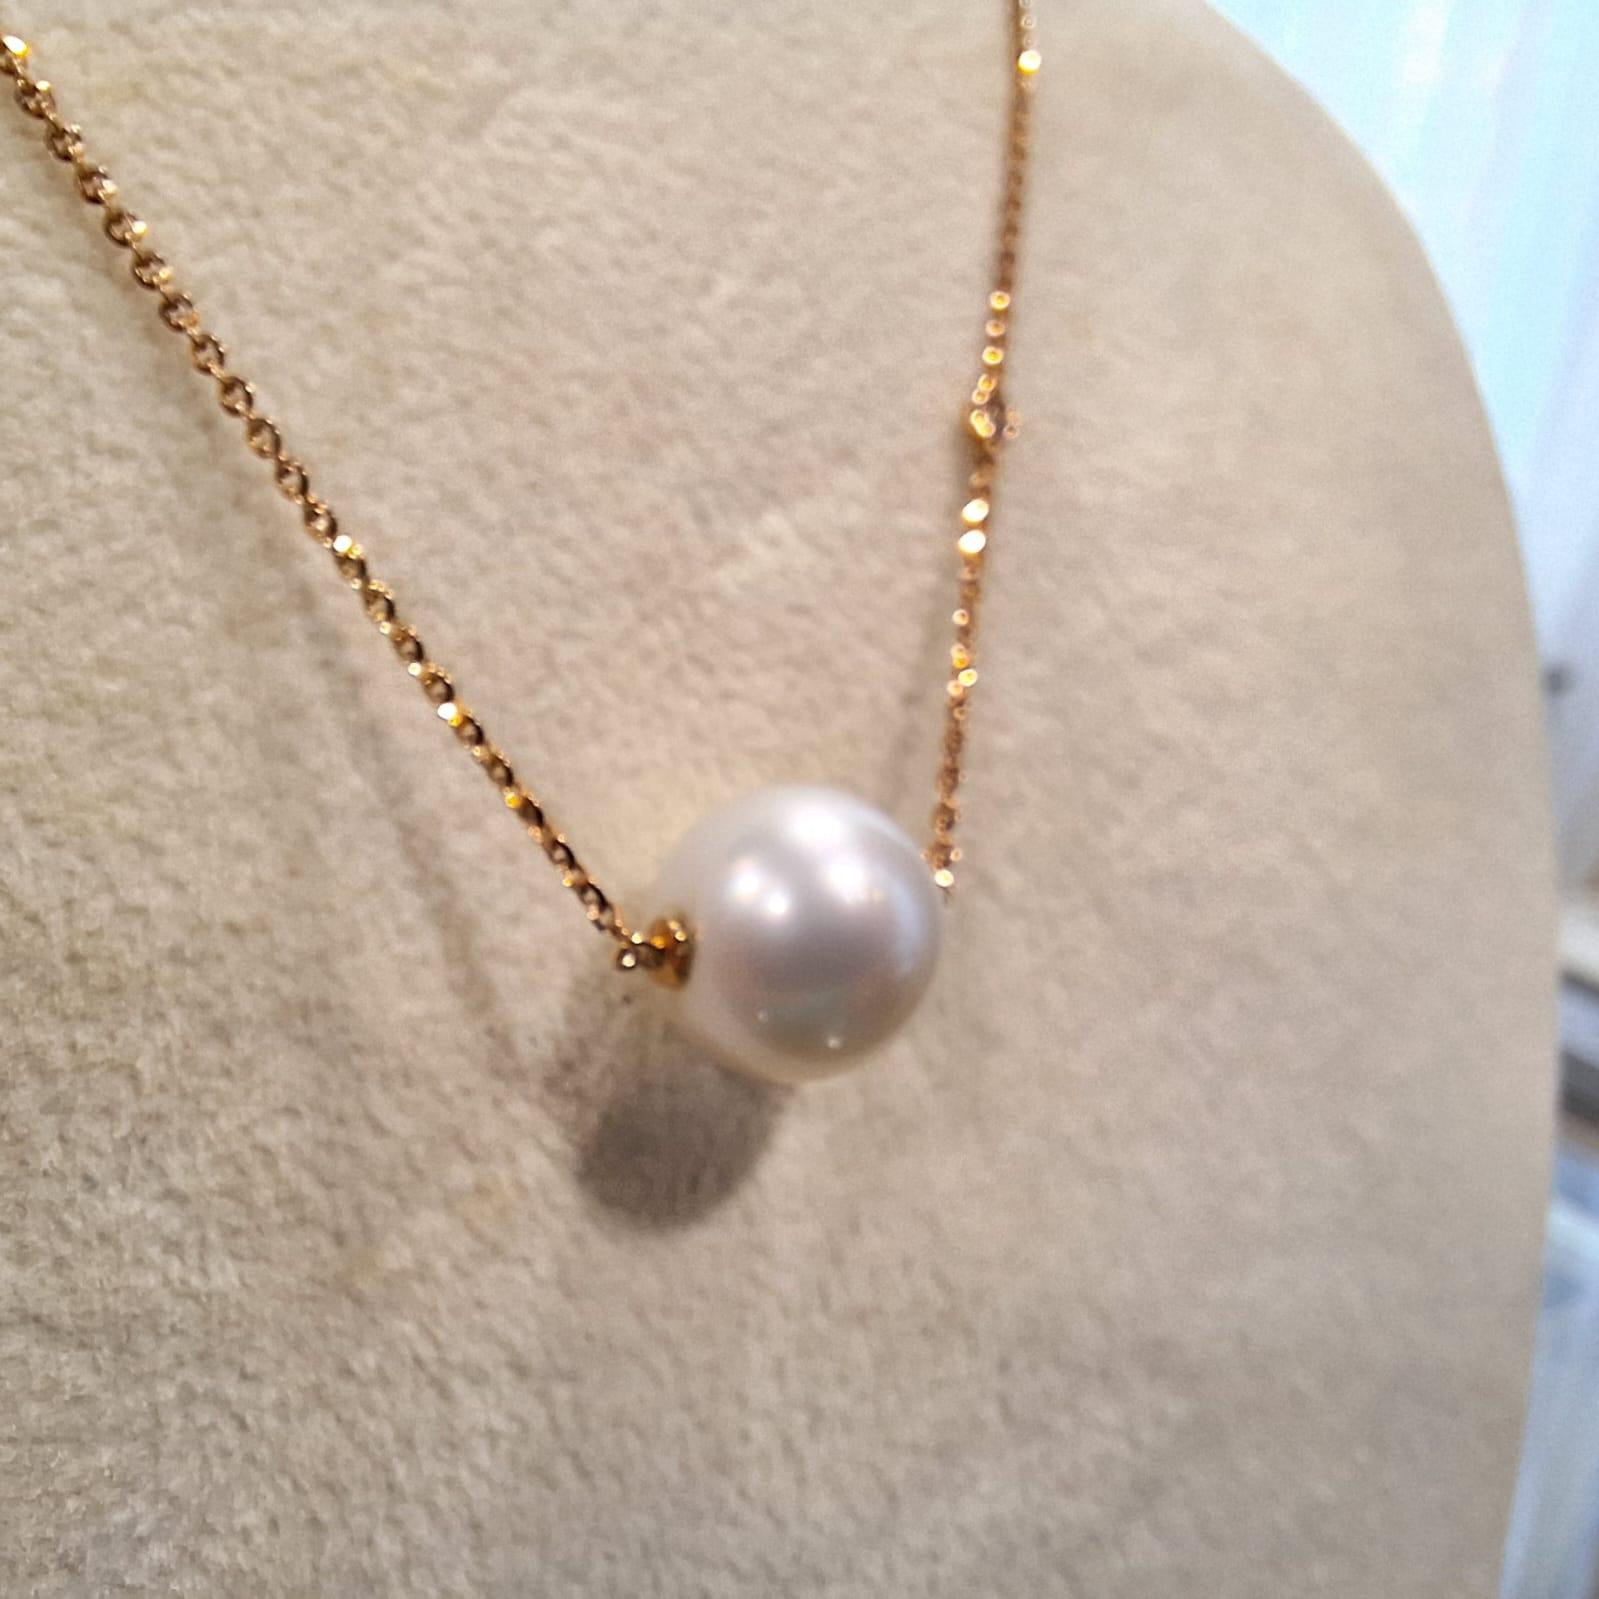 Weiße Perlen symbolisieren Unschuld, Schönheit, Aufrichtigkeit und Neubeginn. Das macht die weiße Perle zu einem echten Klassiker für Brautschmuck.

Die Südseeperle hat eine Größe von 11,14 mm, und der seitliche Diamant hat 1 Stück 0,02 Karat.
